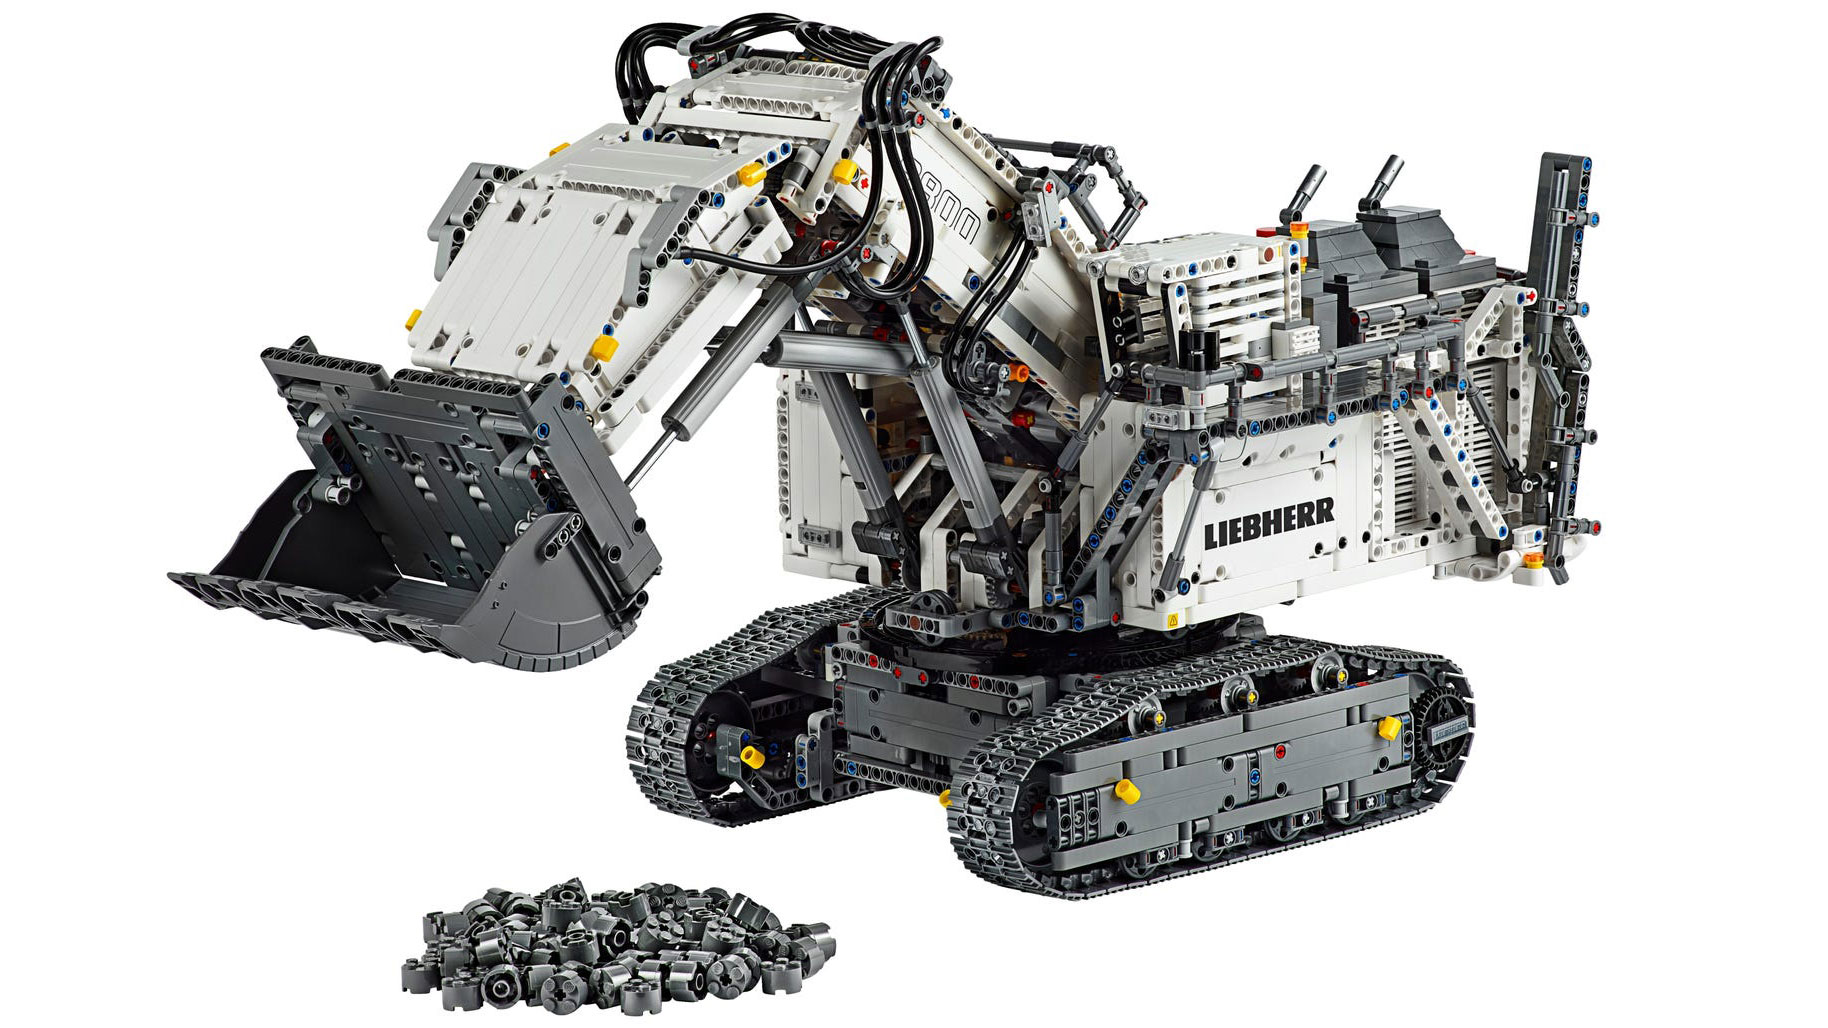 Lego Liebherr Excavator